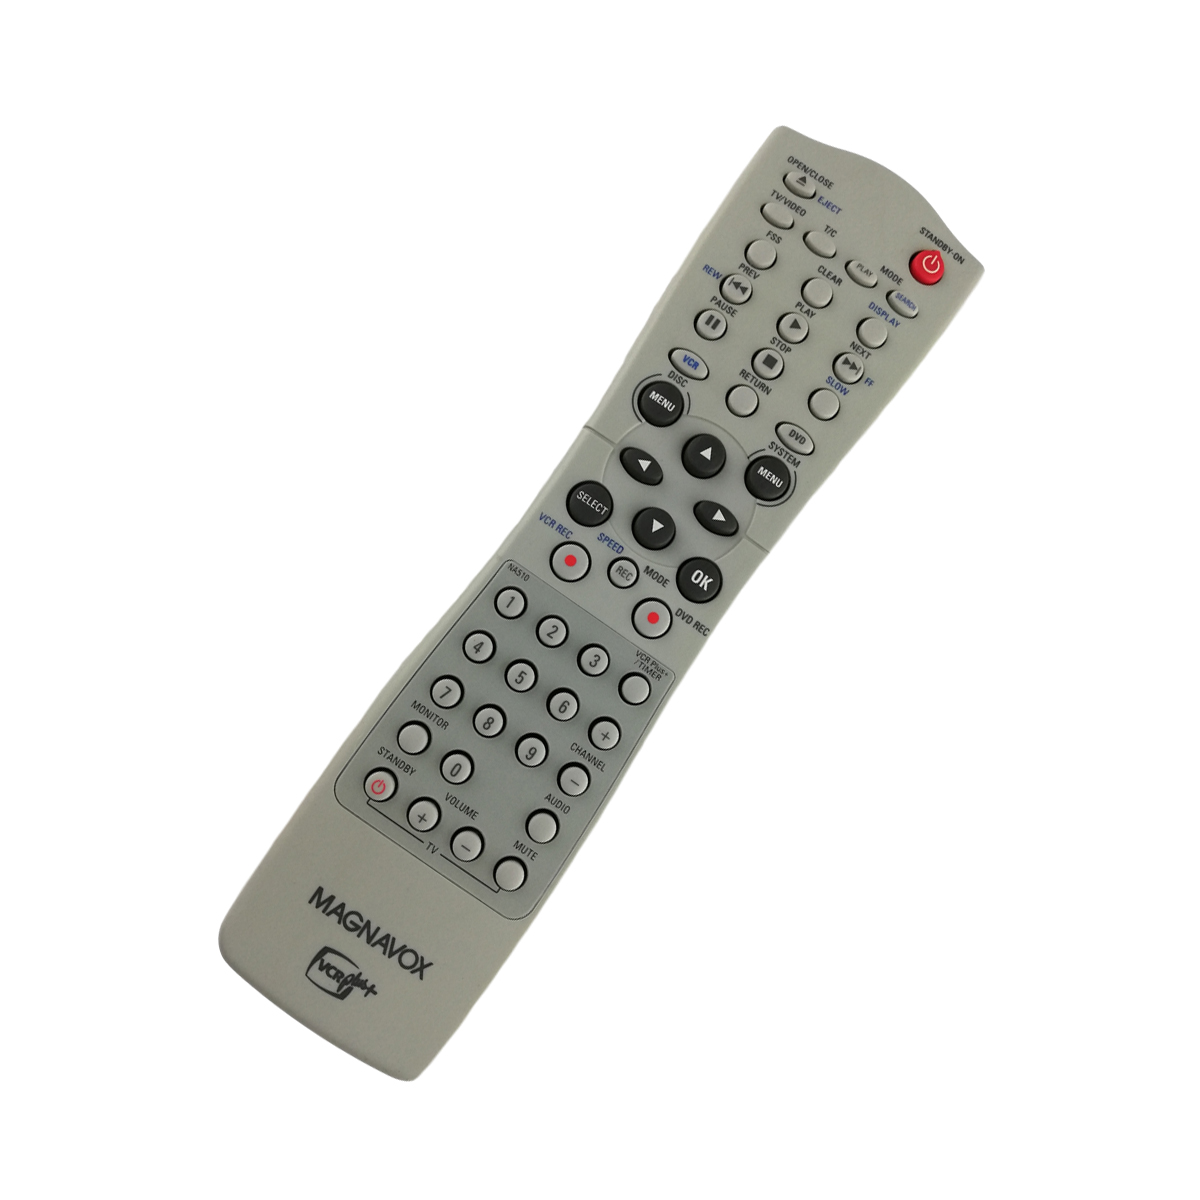 Philips Original TV Remote Control for MAGNAVOX CR674CAT21 Television